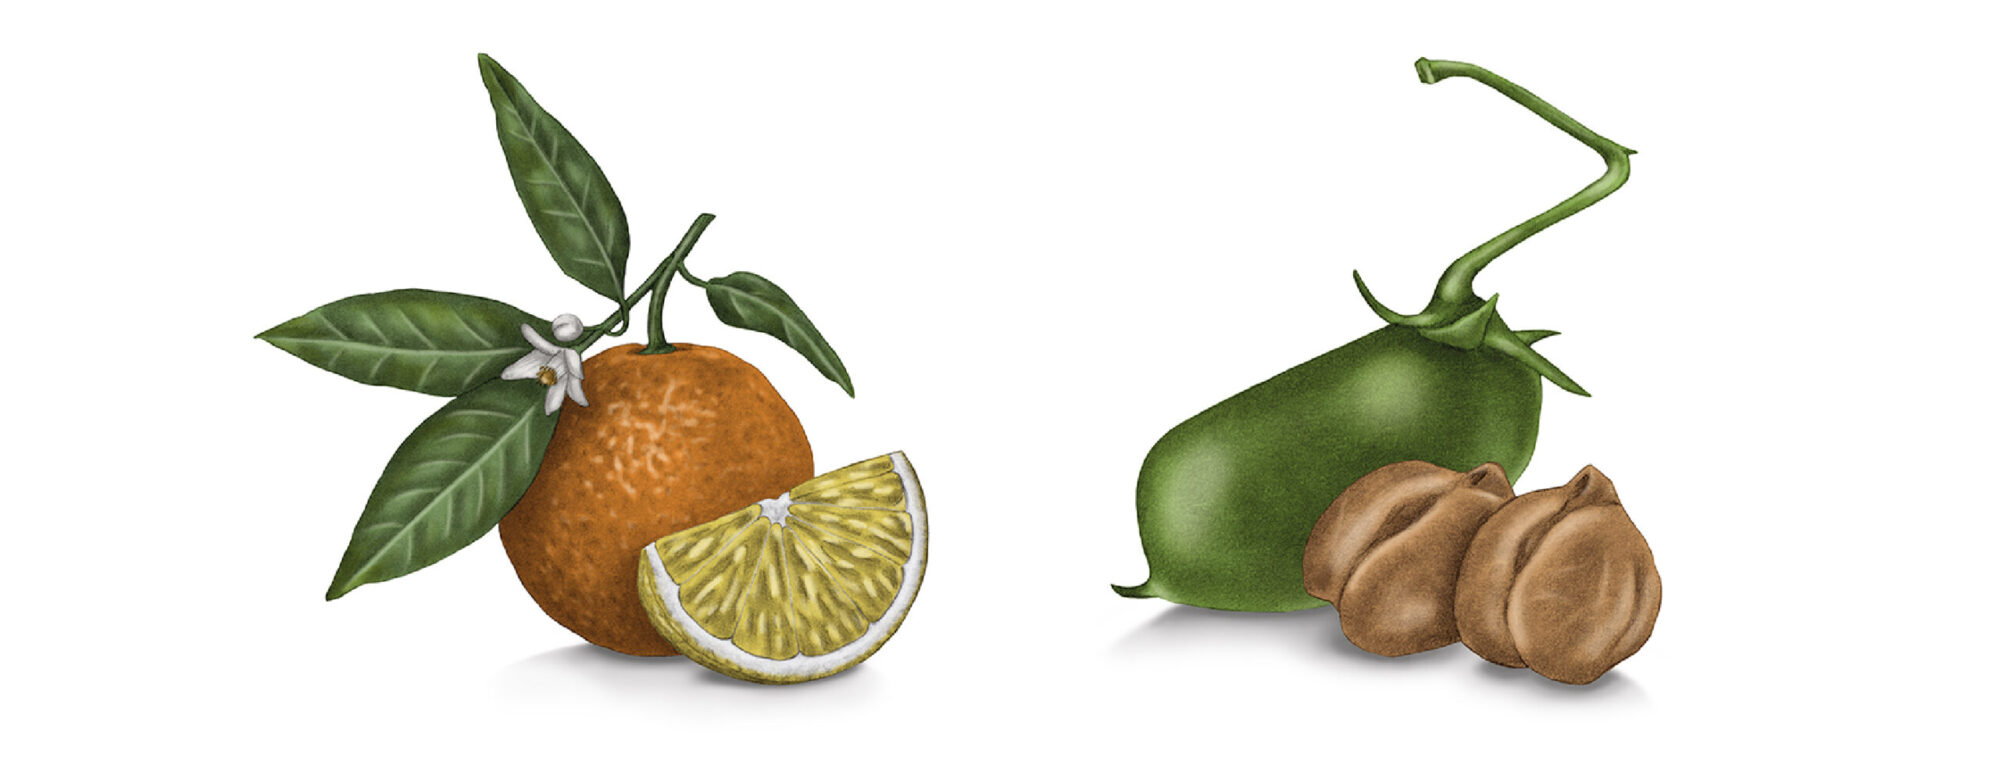 giulia-borsi-illustration-label-design-oranges-chickpeas